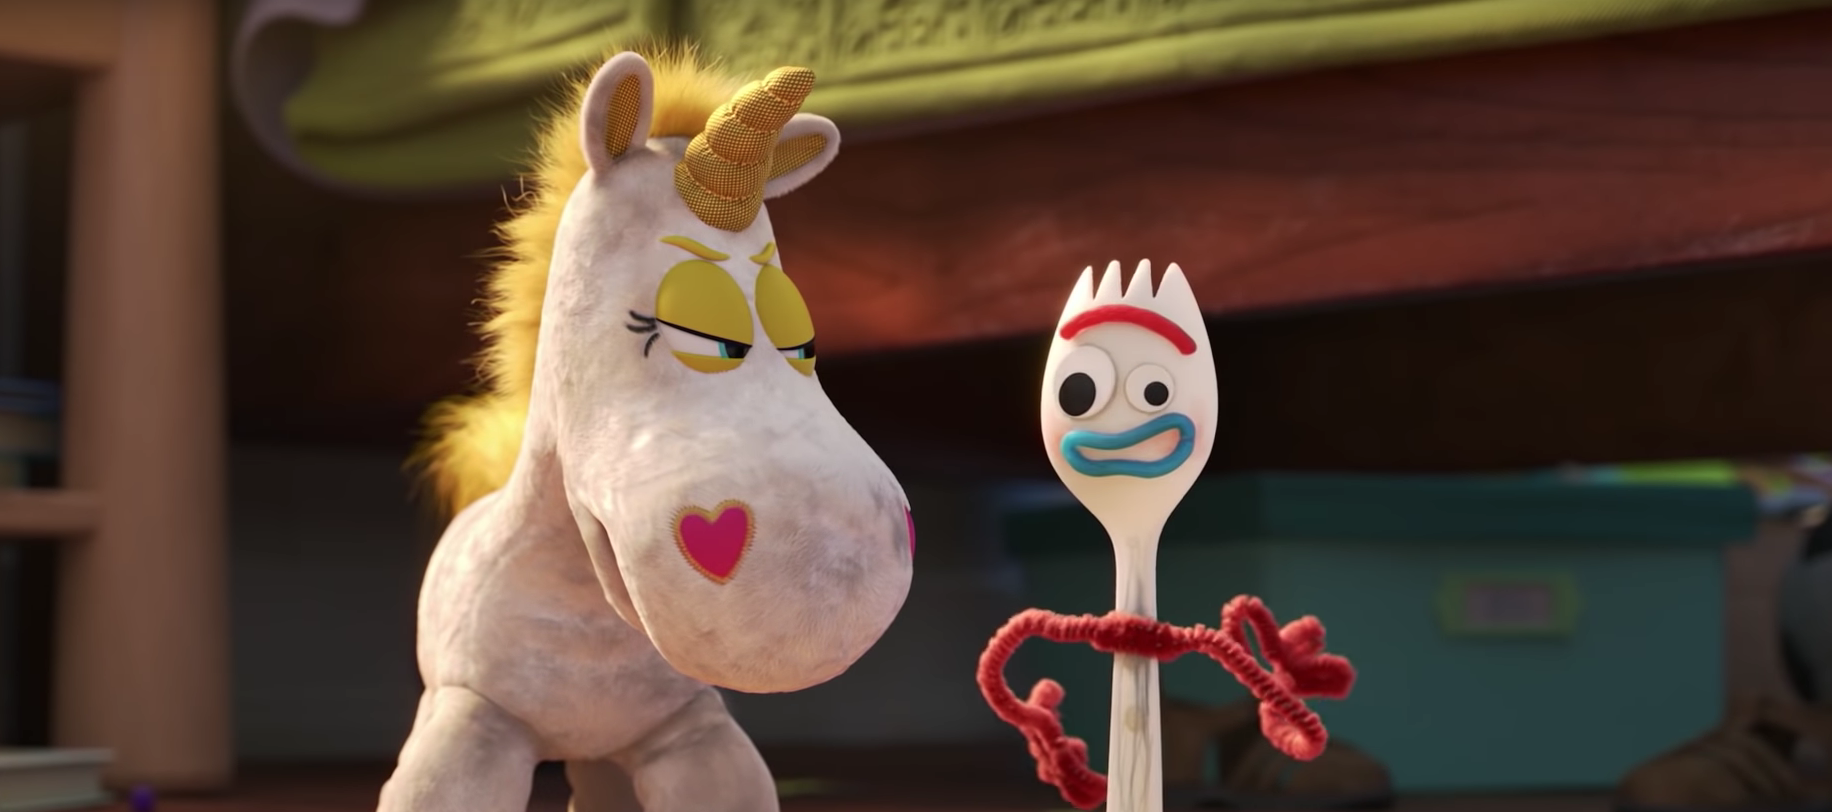 Toy Story 4 : découvrez la bande-annonce de la série Disney+ consacrée à Fourchette